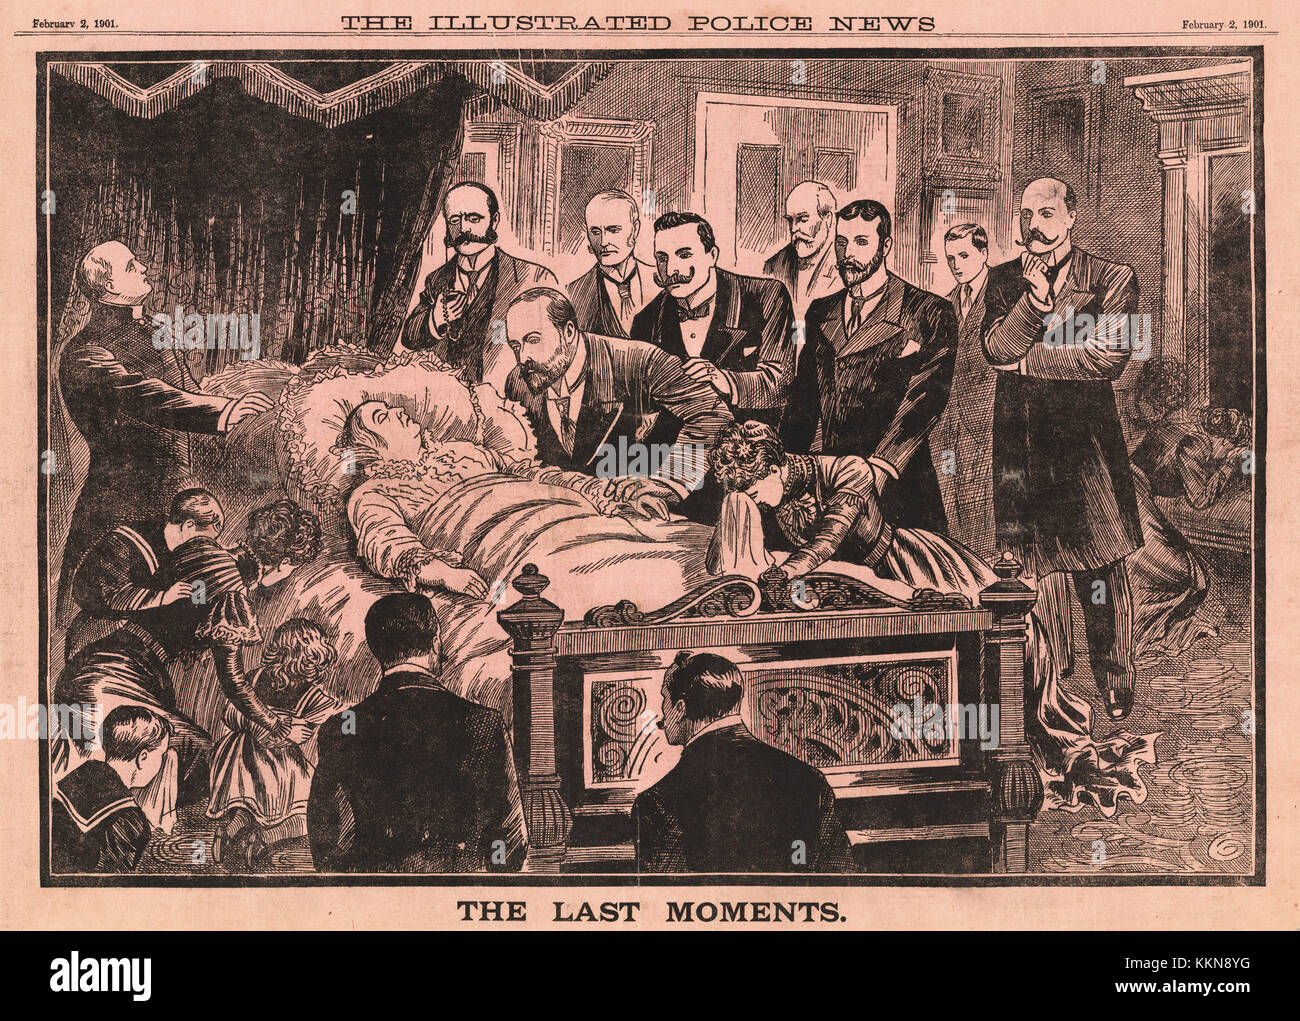 1901 ilustra las noticias policiales de la Reina Victoria en su lecho de muerte Foto de stock